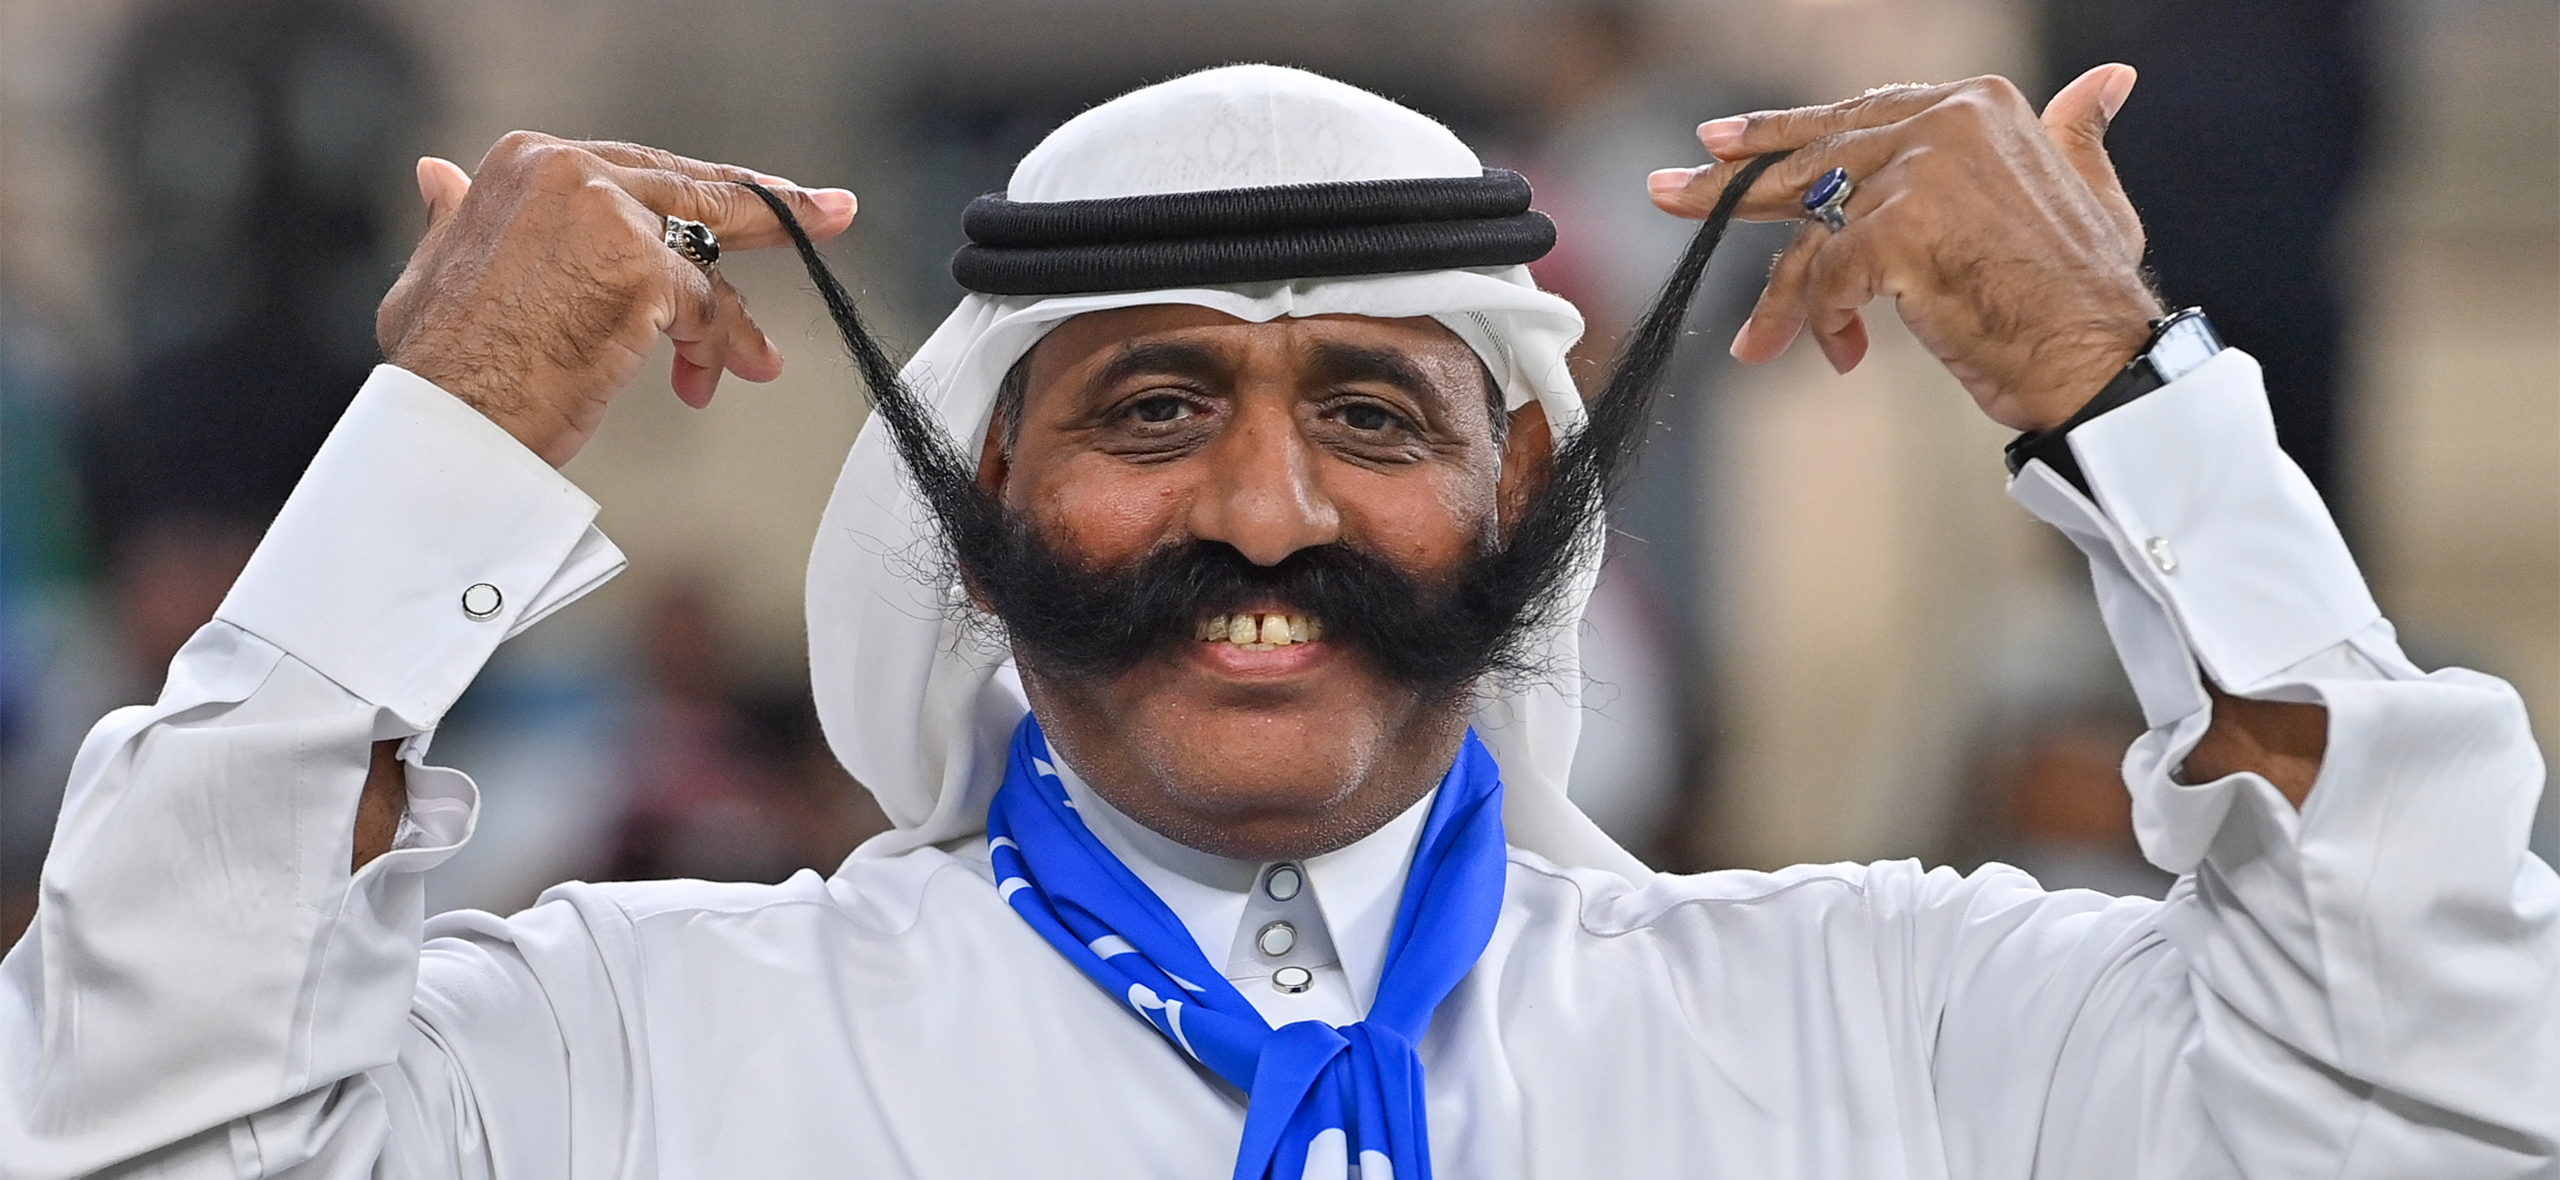 Гигантские амбиции и деньги: что происходит в футбольной Про-лиге Саудовской Аравии